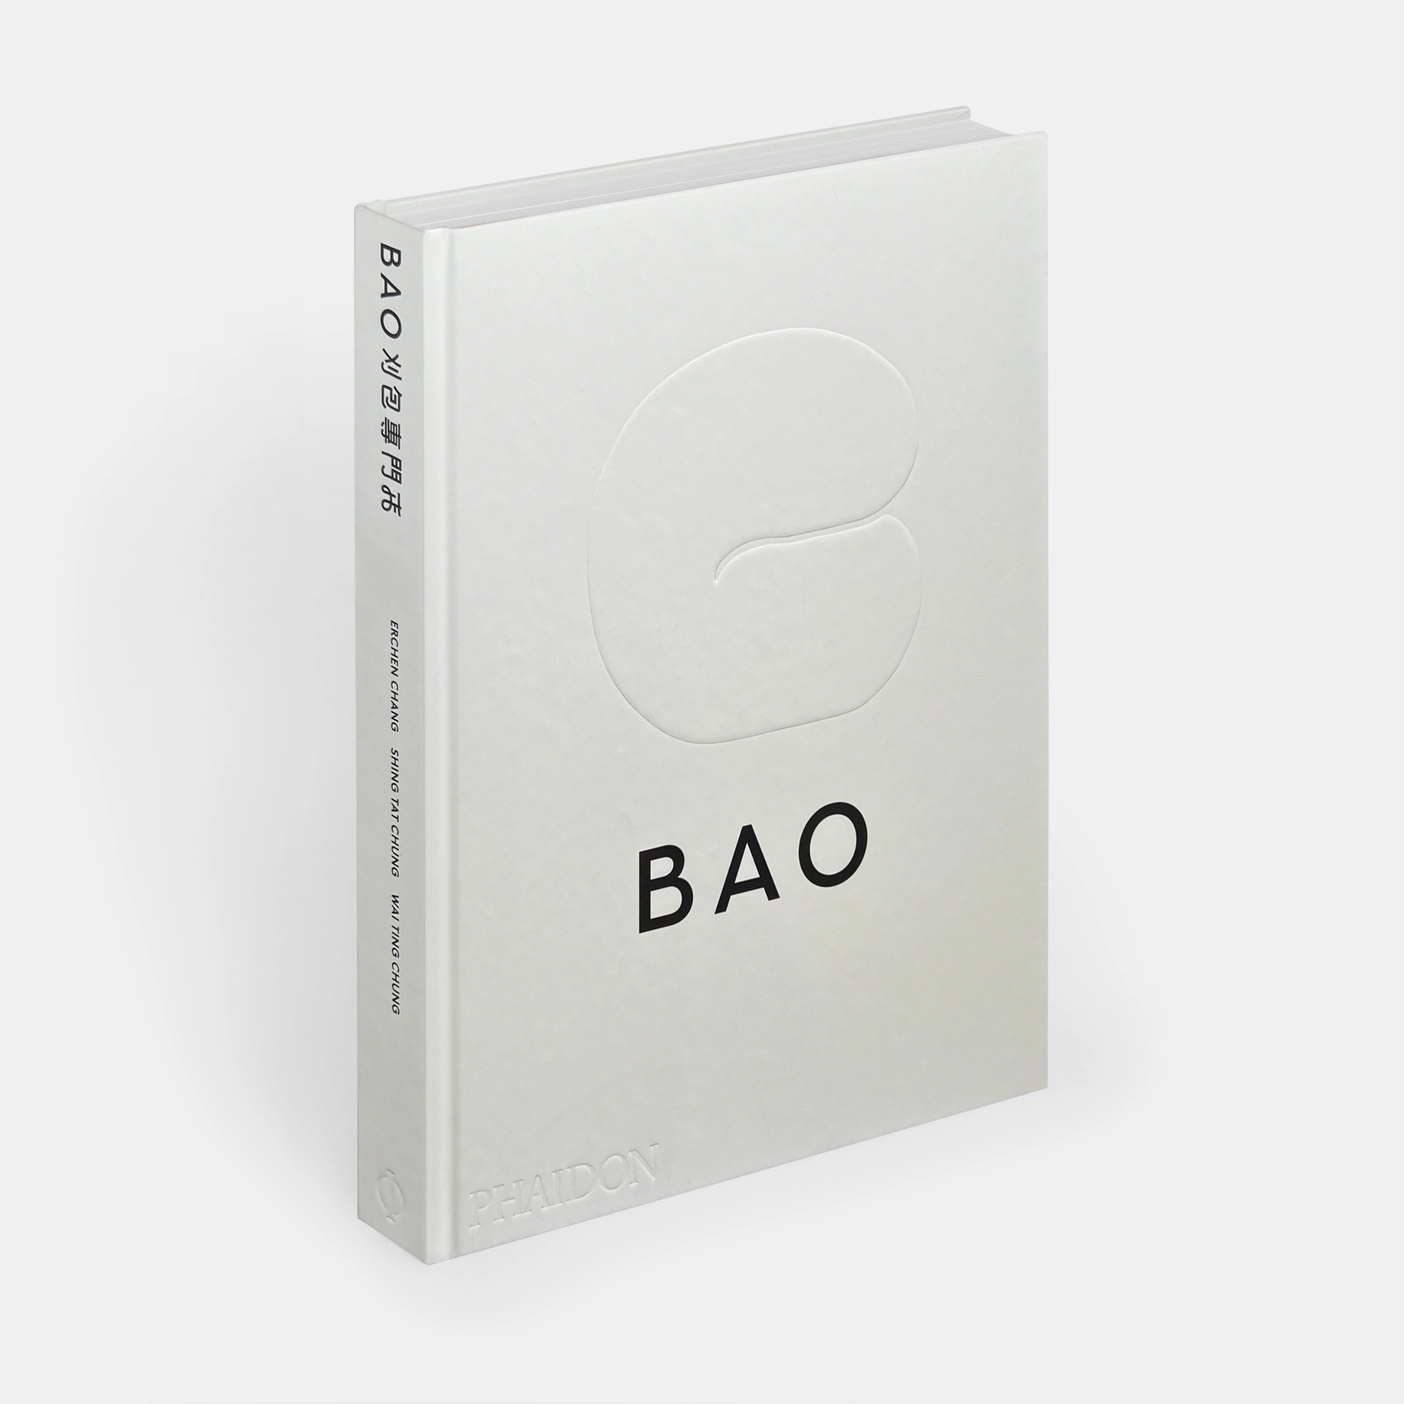 Bao Book by Erchen Chang, Sing Tat Chung & Wai Ting Chung